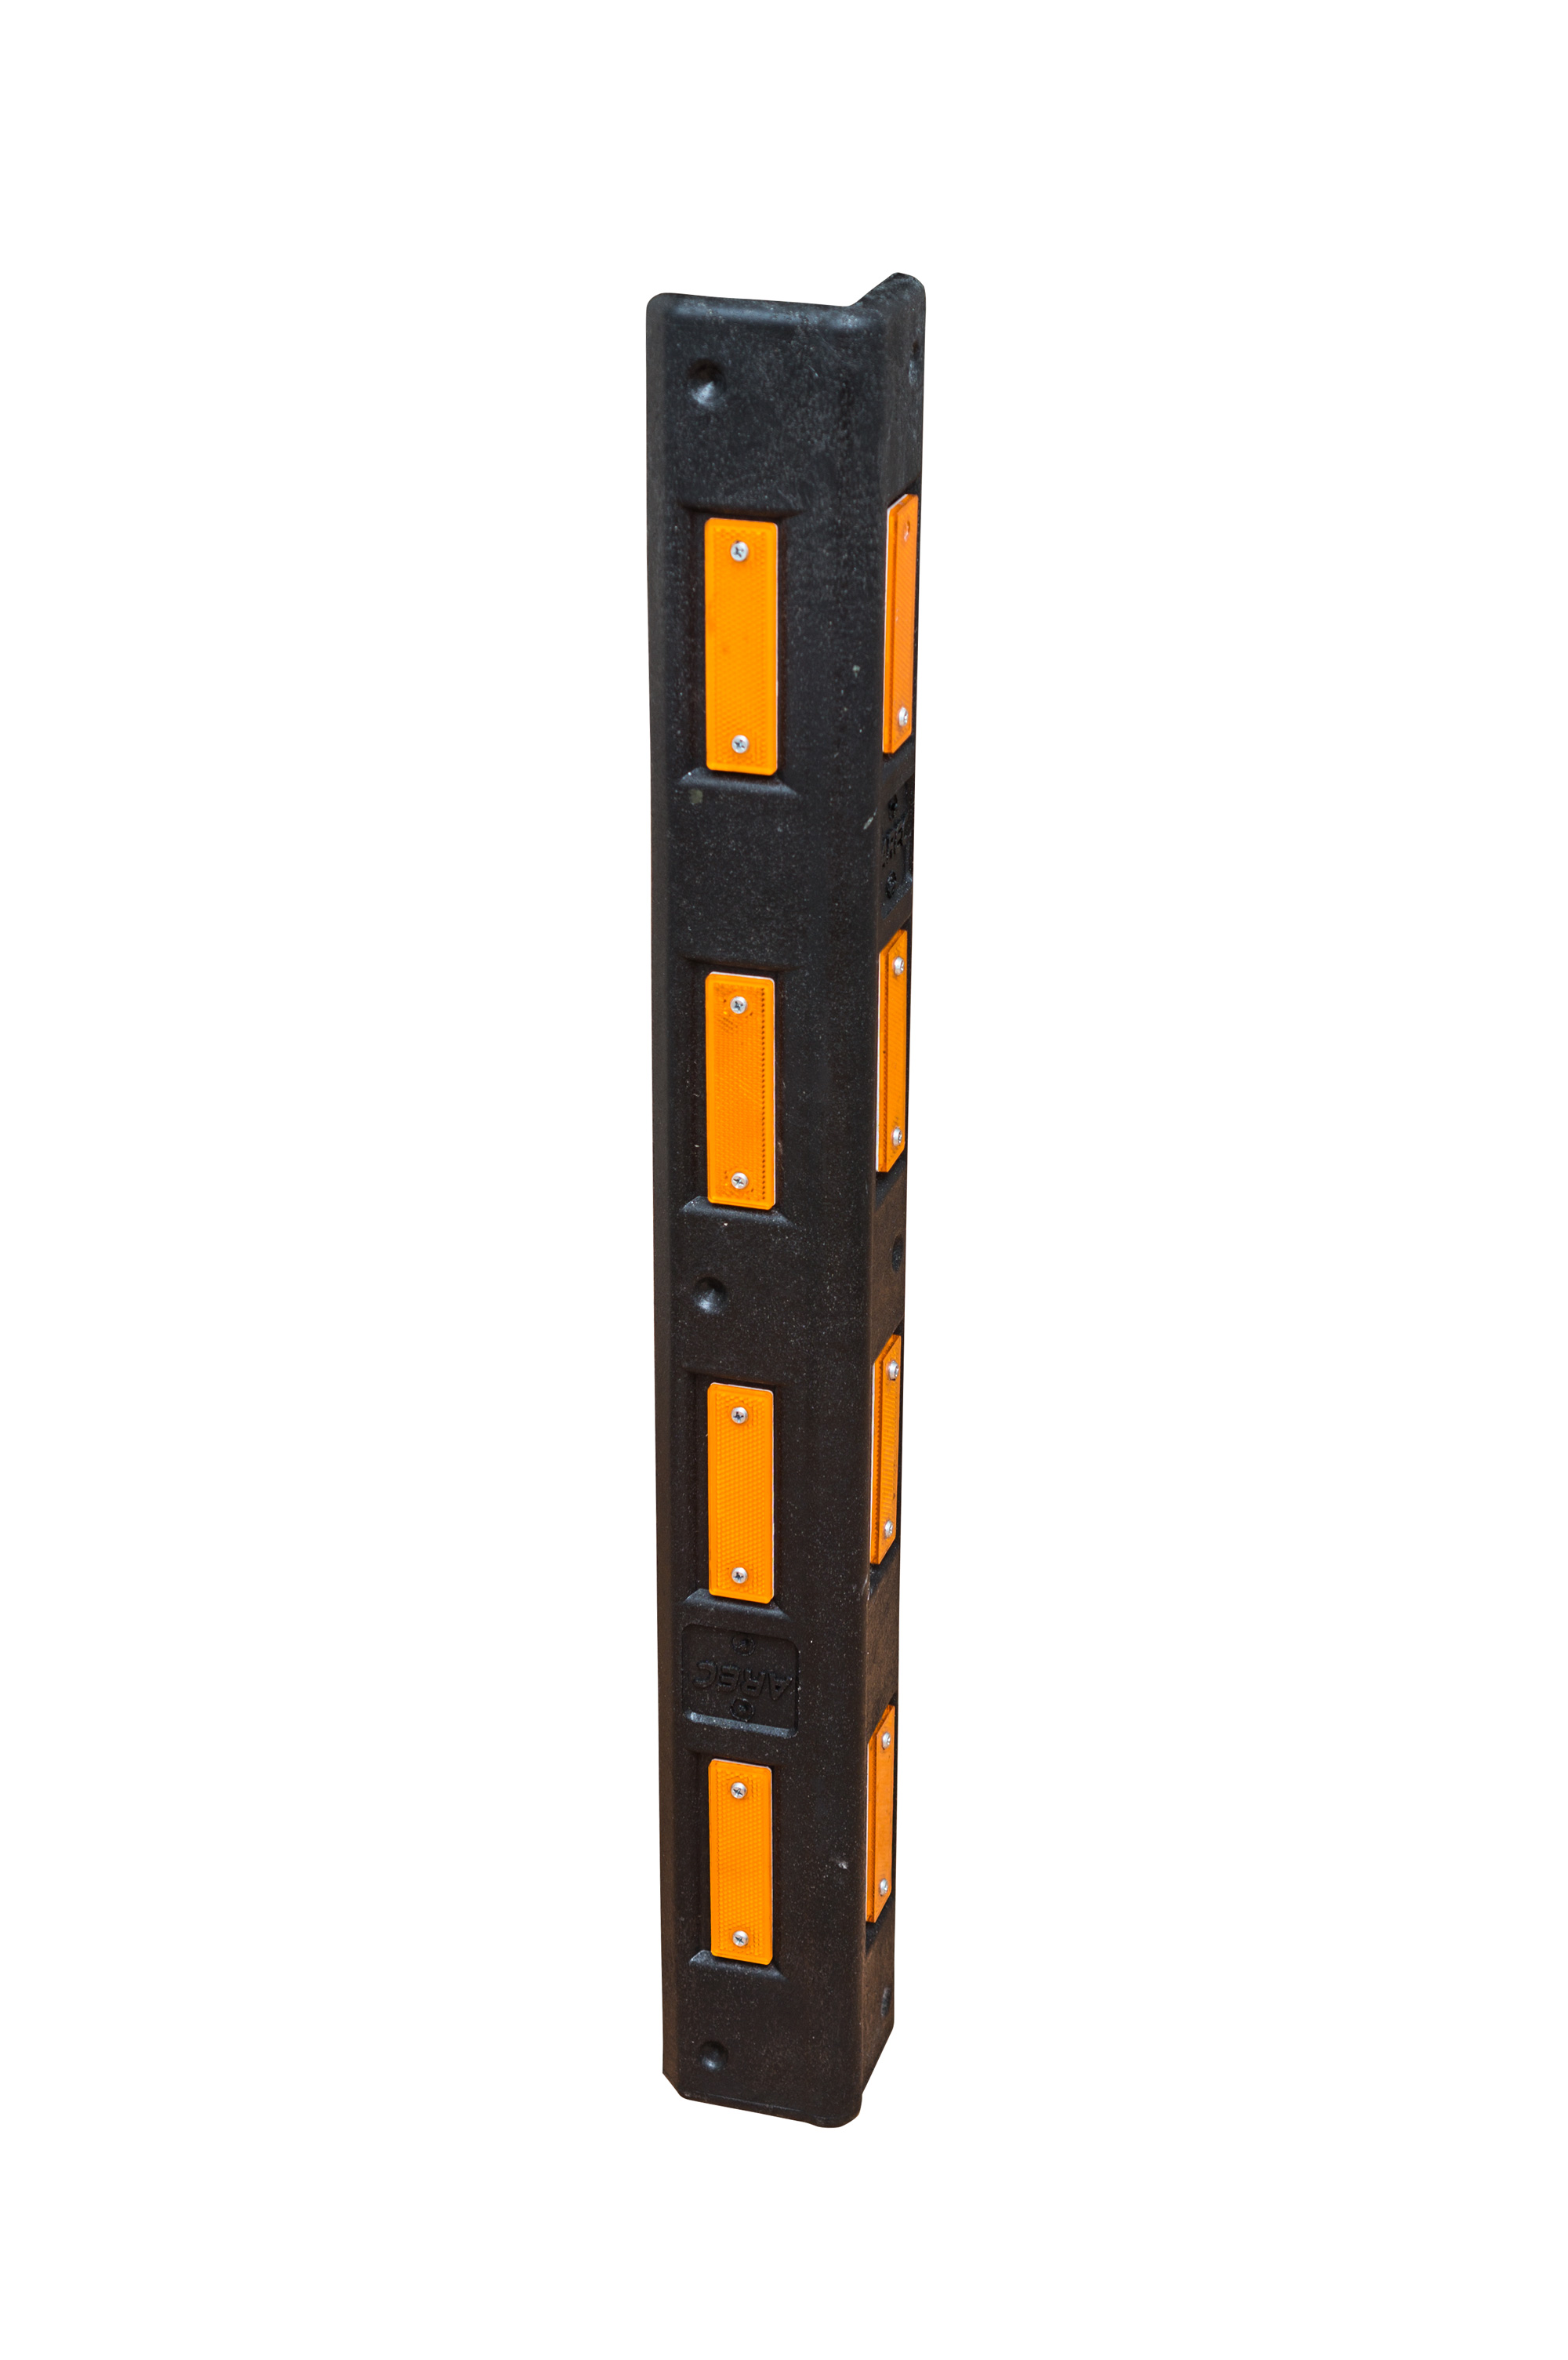 Демпфер угловой композитный ДУ-800 со светоотражающим жёлтым катафотом 